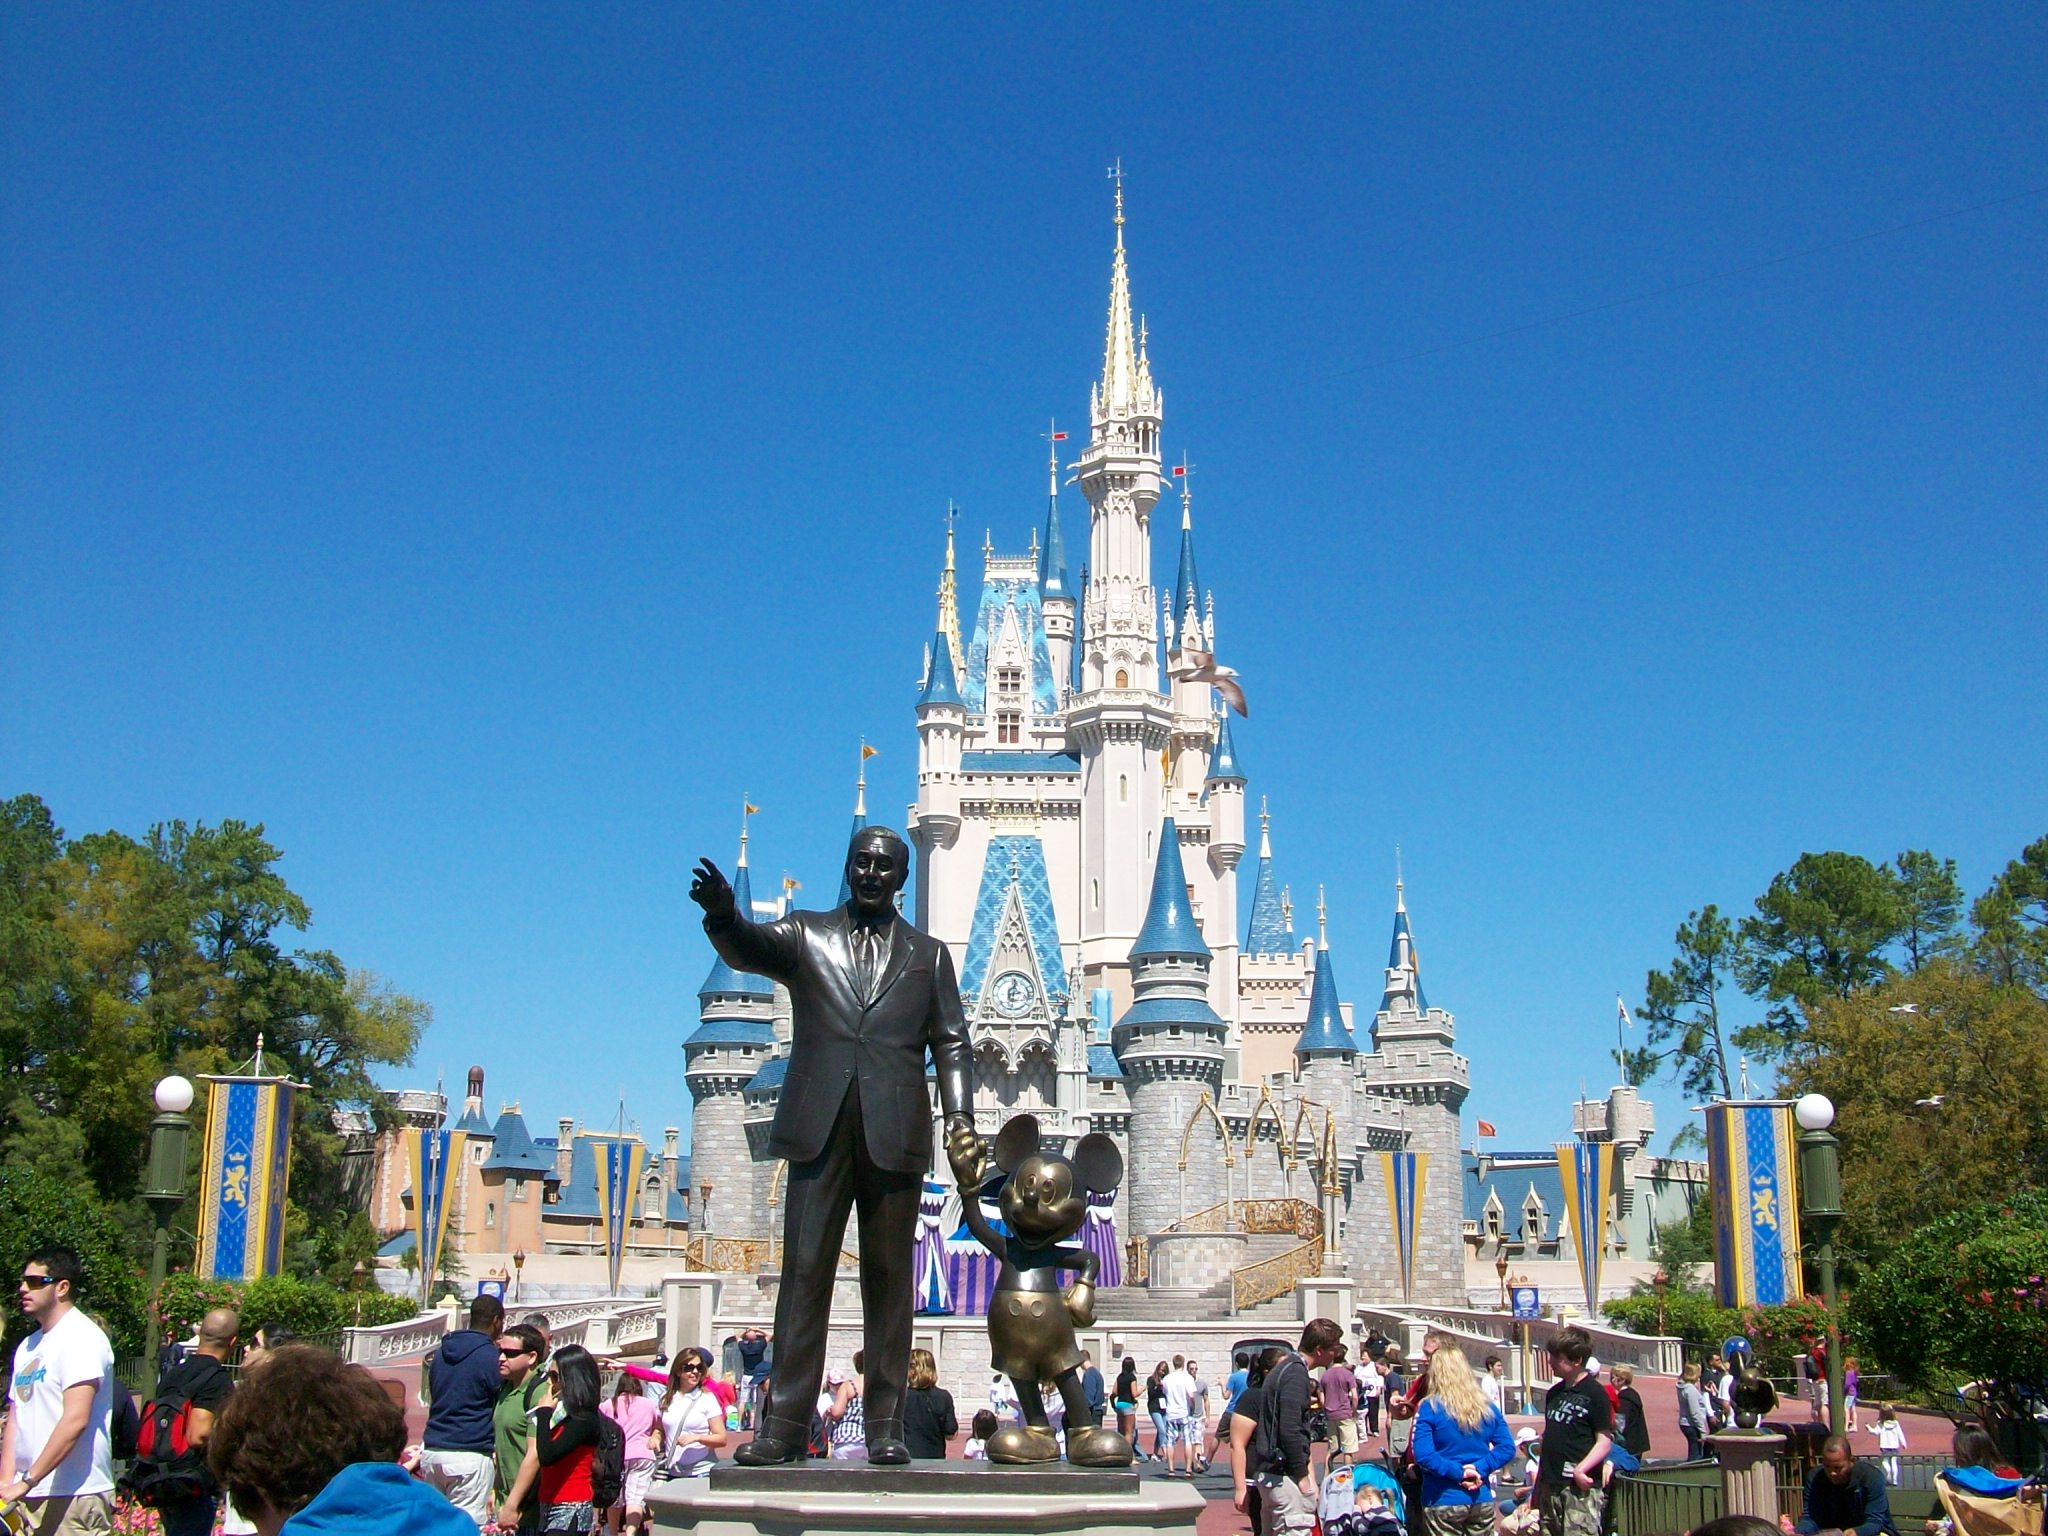 Disney World: A Magic Kingdom this wasn't | Big Fat Tourist